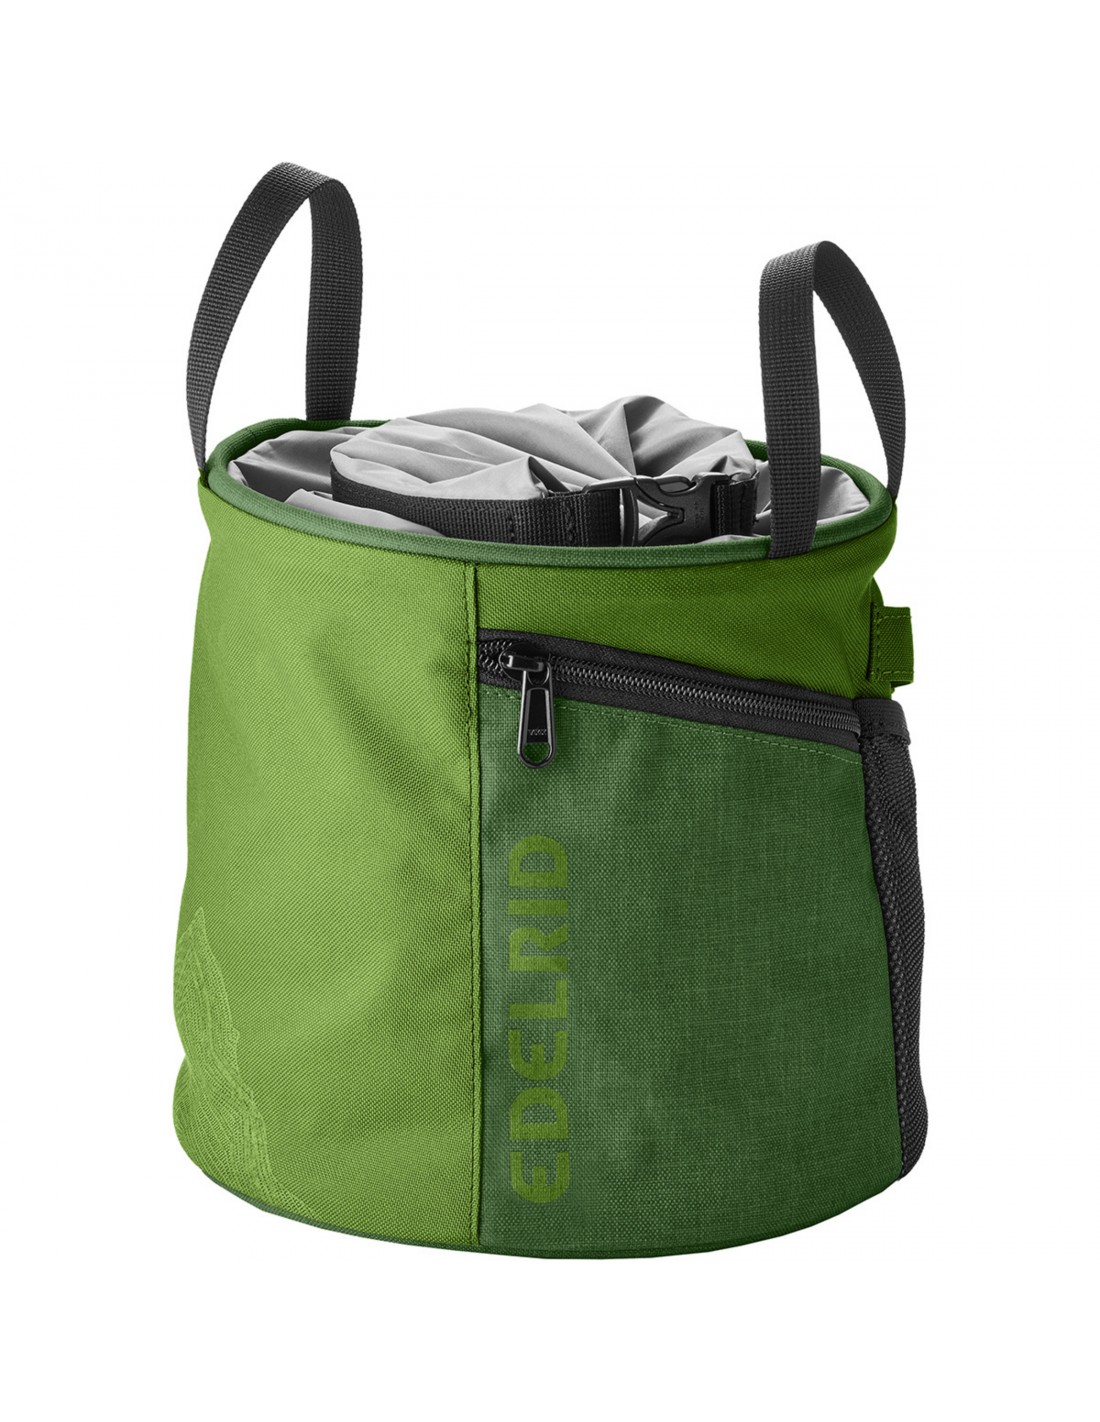 Edelrid Chalkbag Boulder Bag Herkules, apple Chalkbag Verwendung - Bouldern, Chalkbag Farbe - Grün, von Edelrid